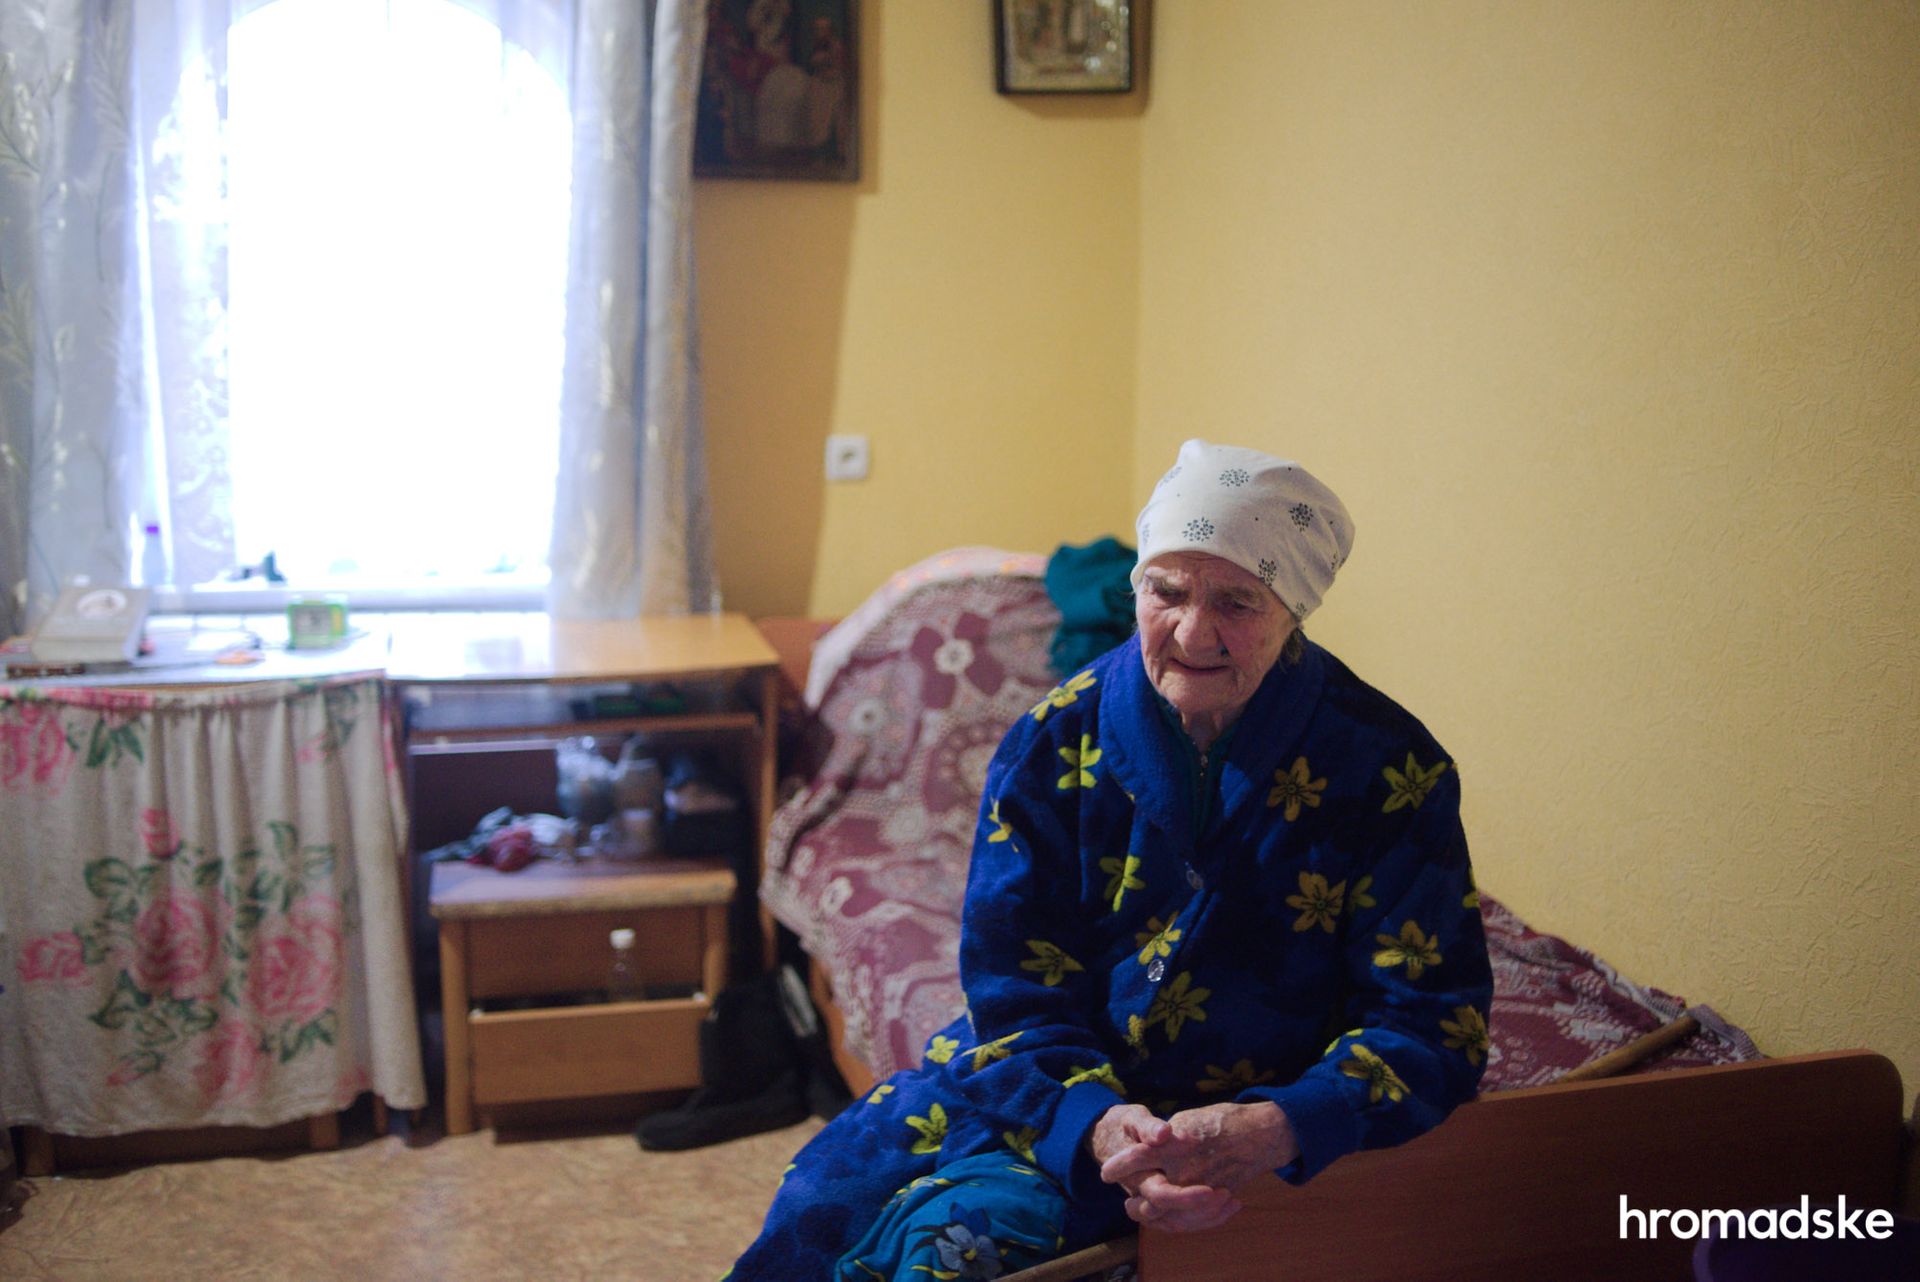 Лидия Кисакова, 81 год. Фото: Макс Левин/hromadske